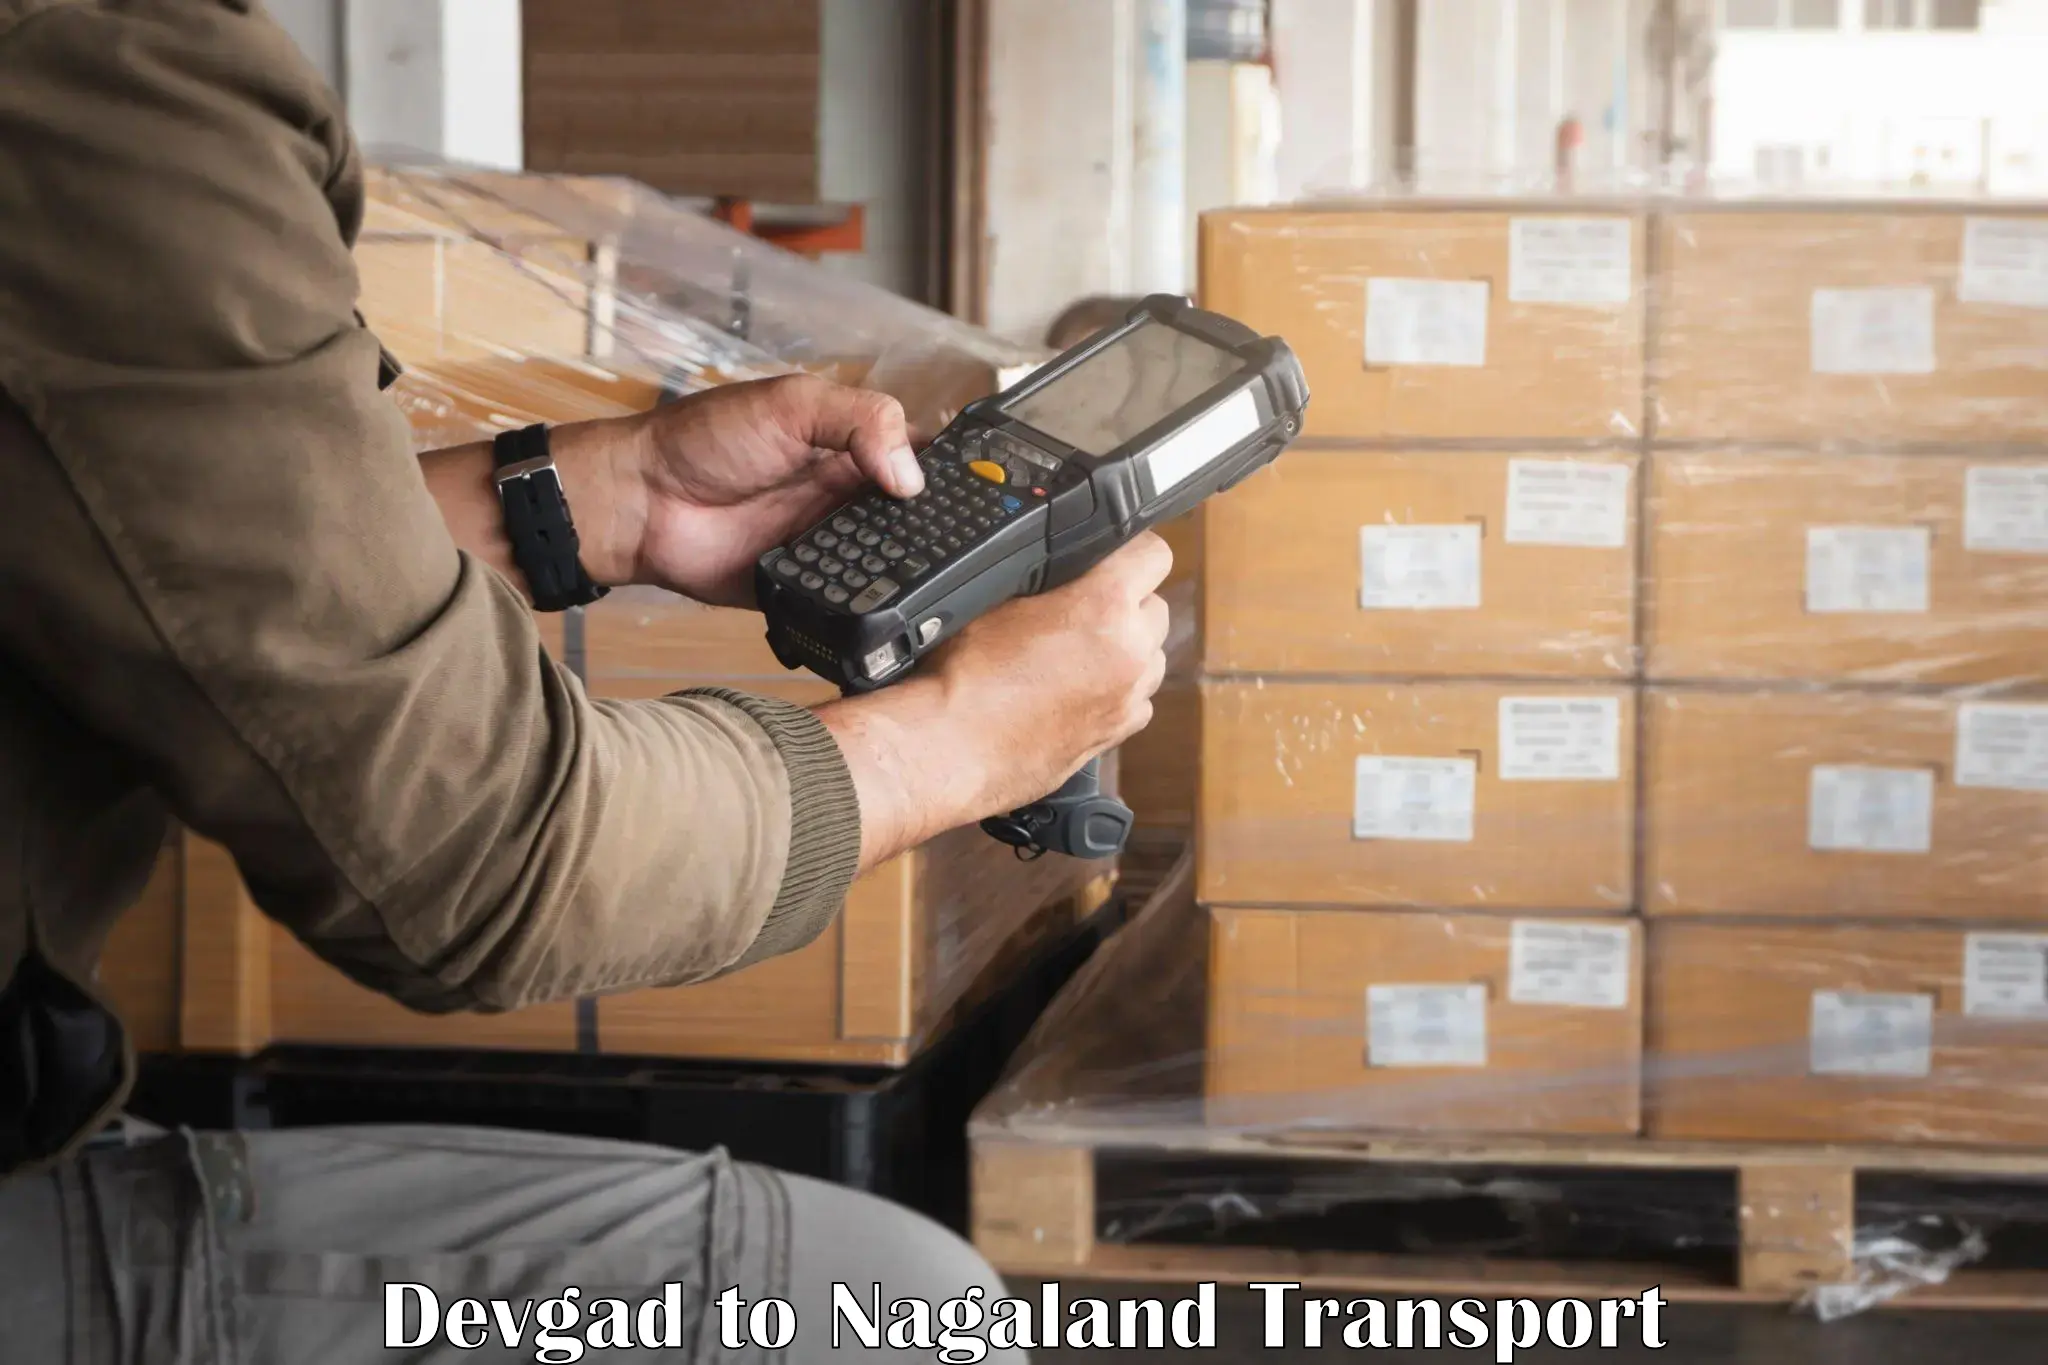 India truck logistics services Devgad to Nagaland